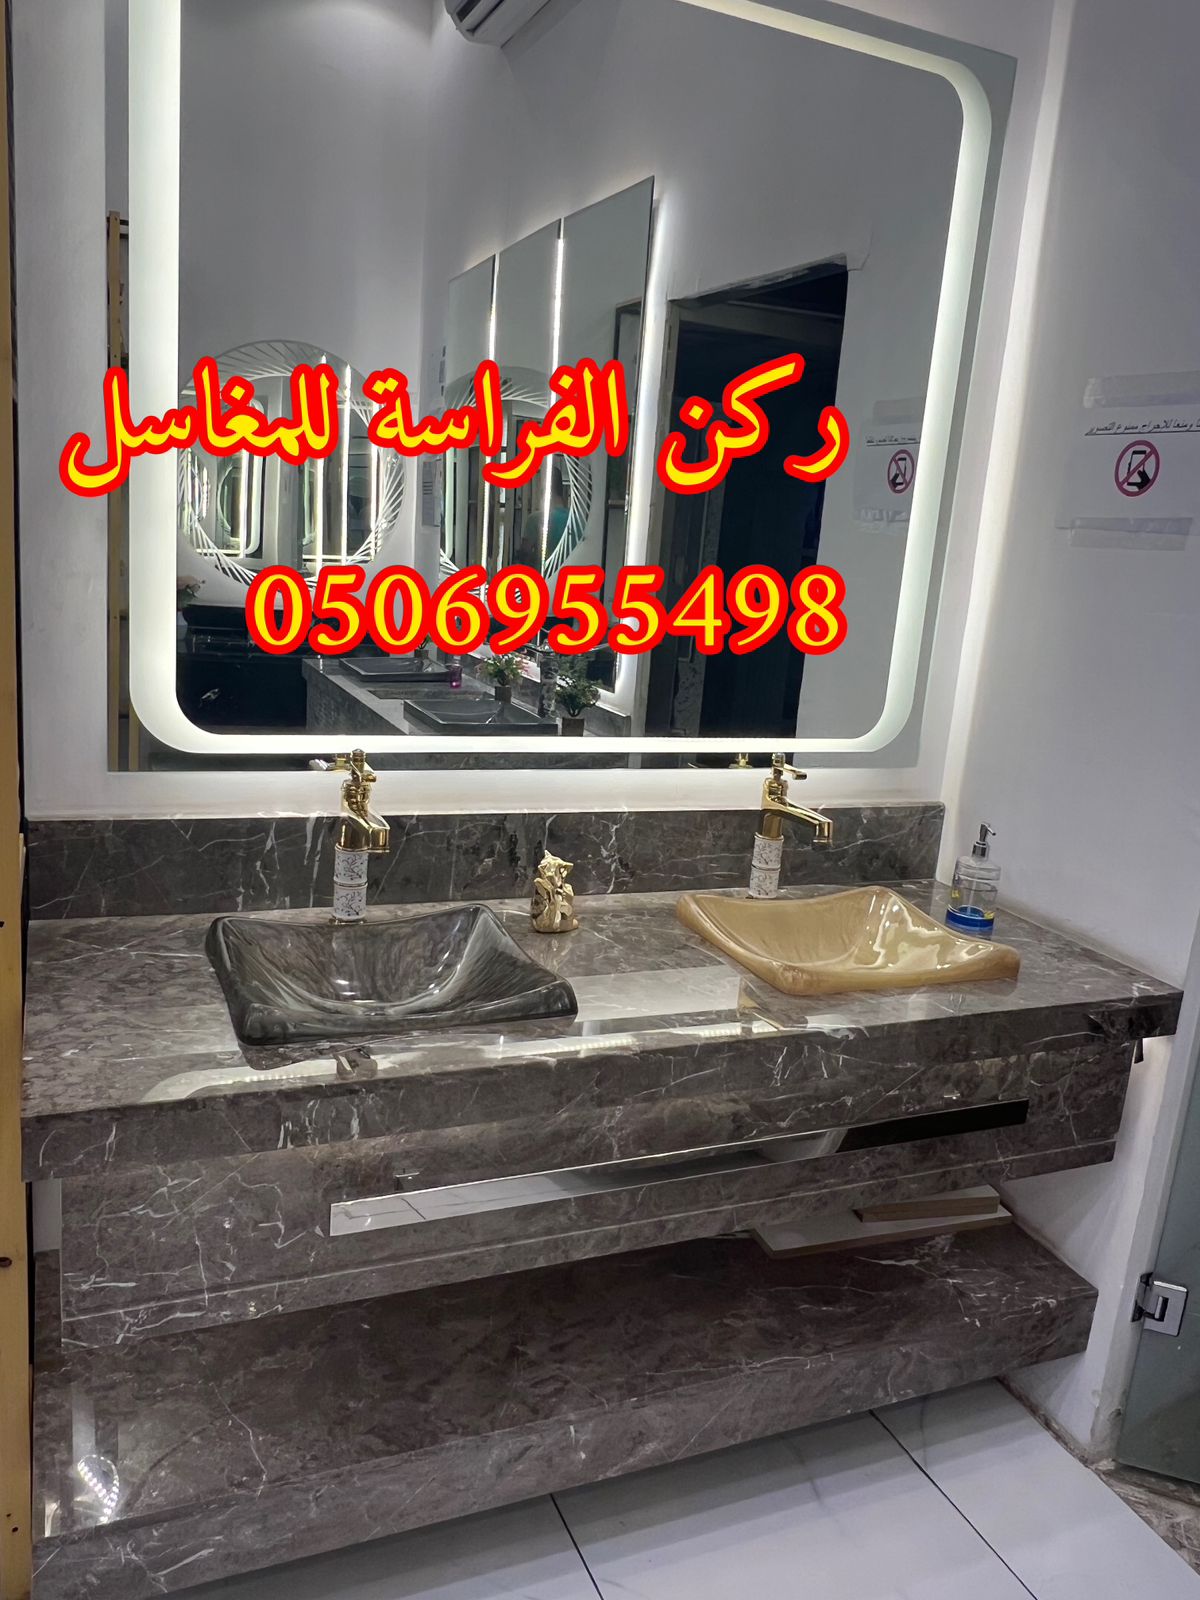 تركيب مغاسل الرخام في الرياض,0506955498